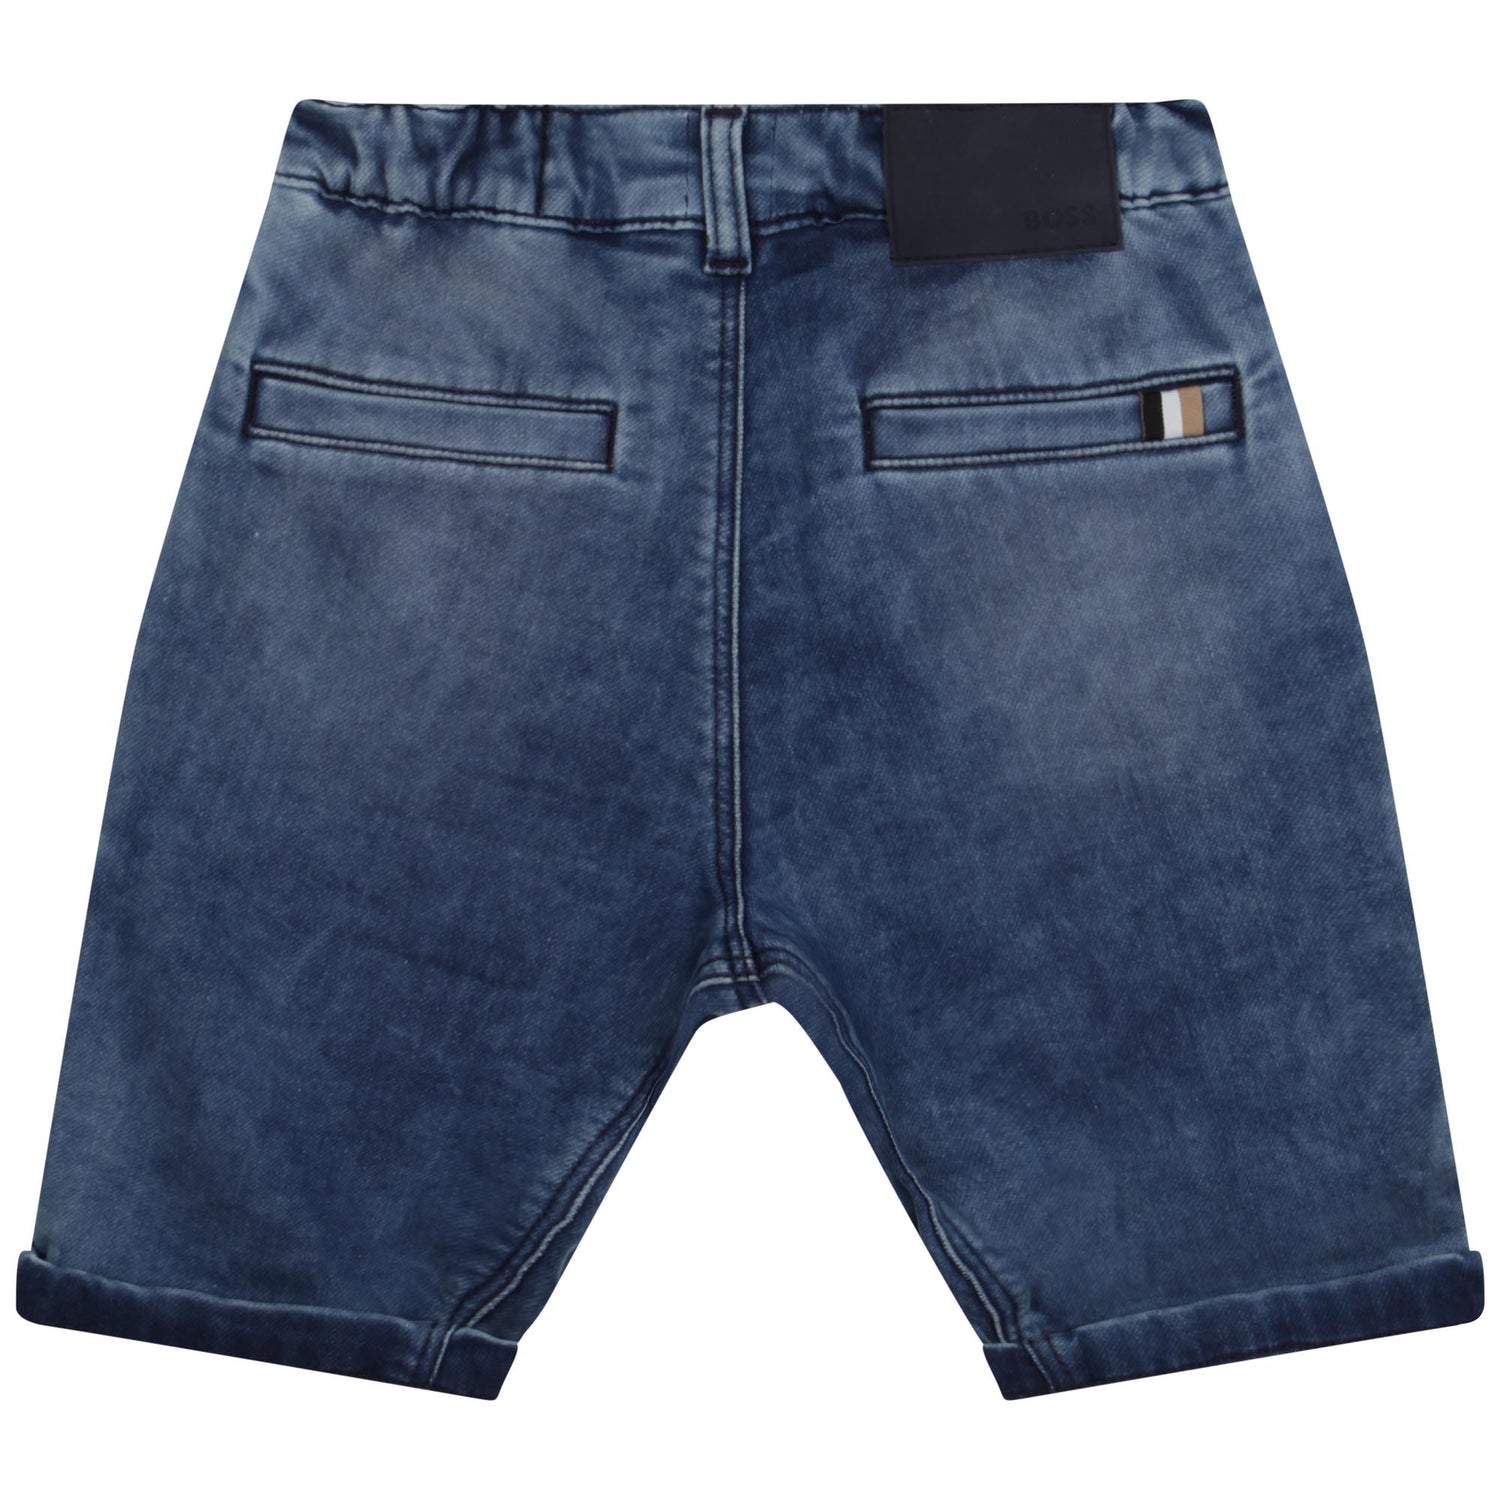 Hugo Boss Denim Shorts Style: J24815